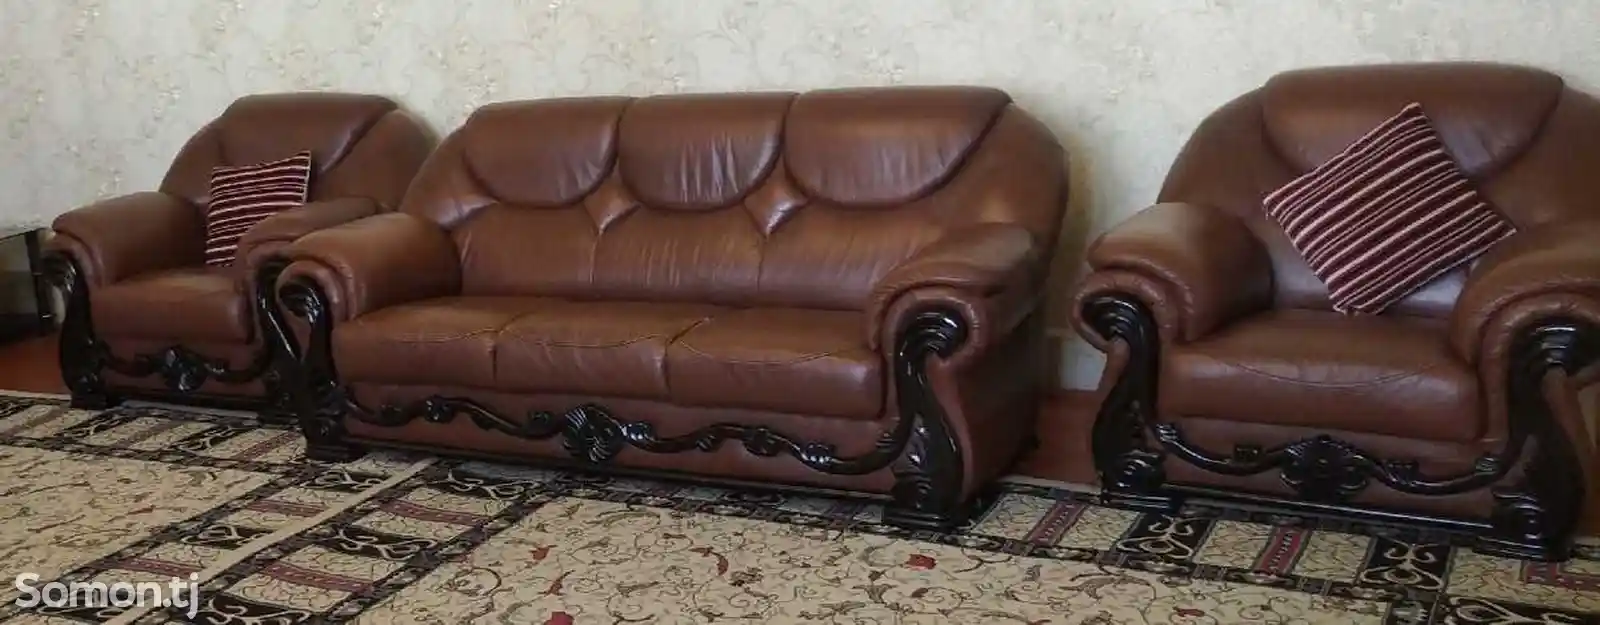 Услуги реставрации мебели-13